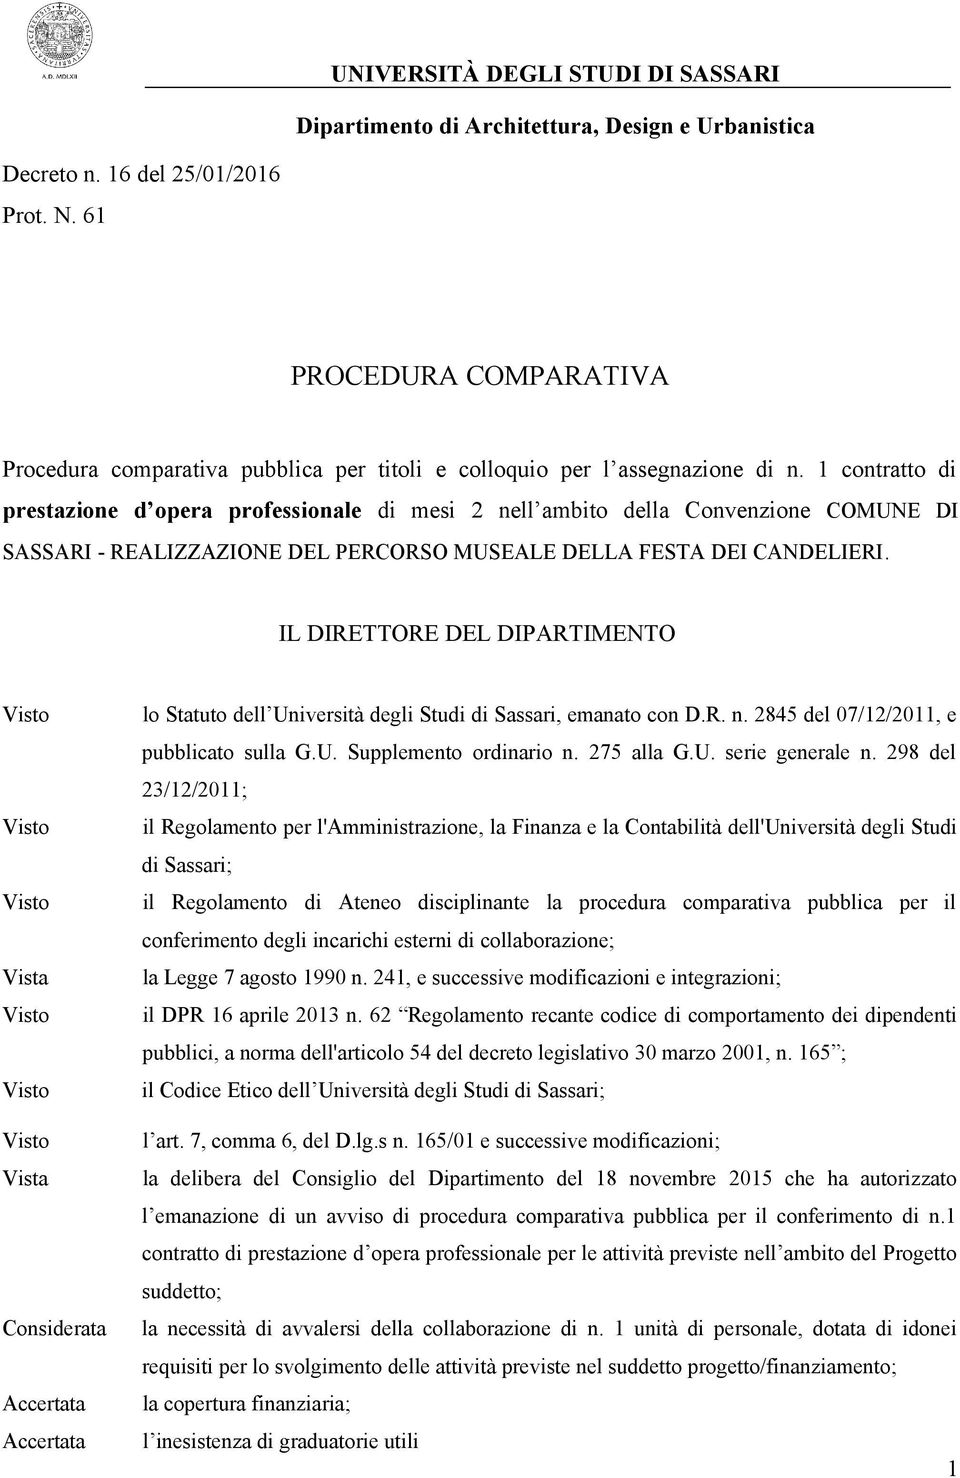 1 contratto di prestazione d opera professionale di mesi 2 nell ambito della Convenzione COMUNE DI SASSARI - REALIZZAZIONE DEL PERCORSO MUSEALE DELLA FESTA DEI CANDELIERI.